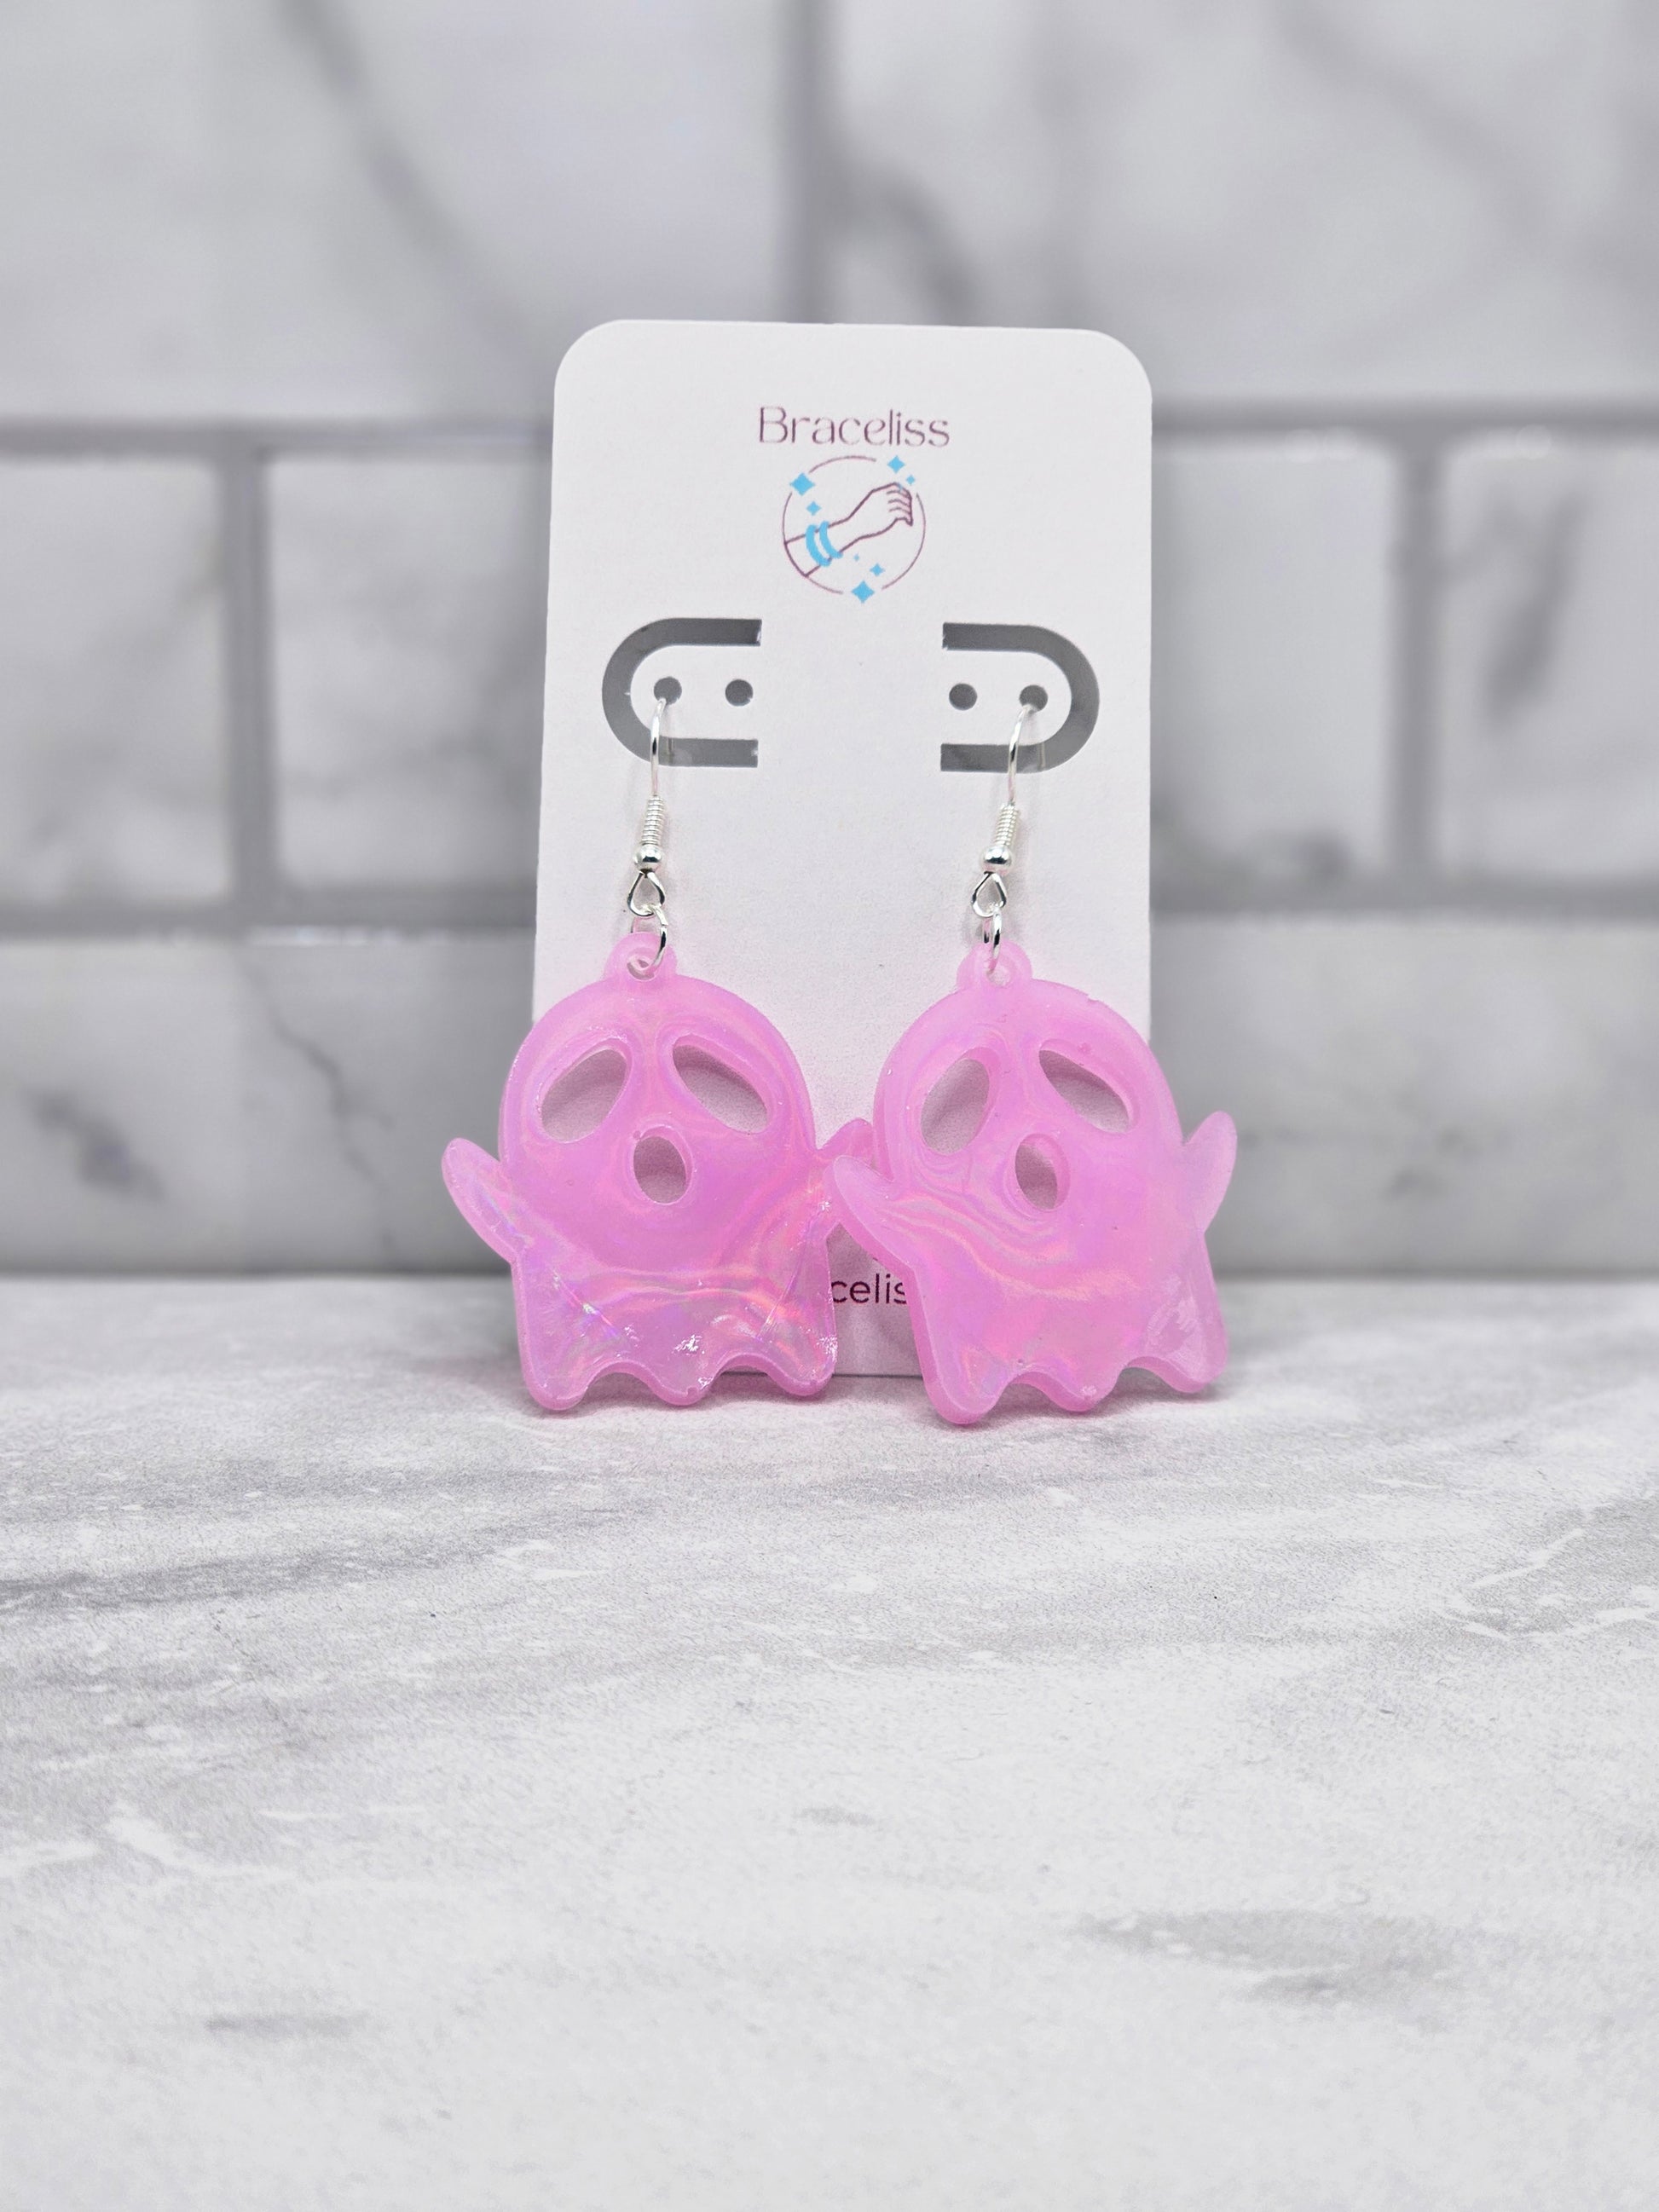 holo ghost earrings | pink halloween resin earrings | Braceliss